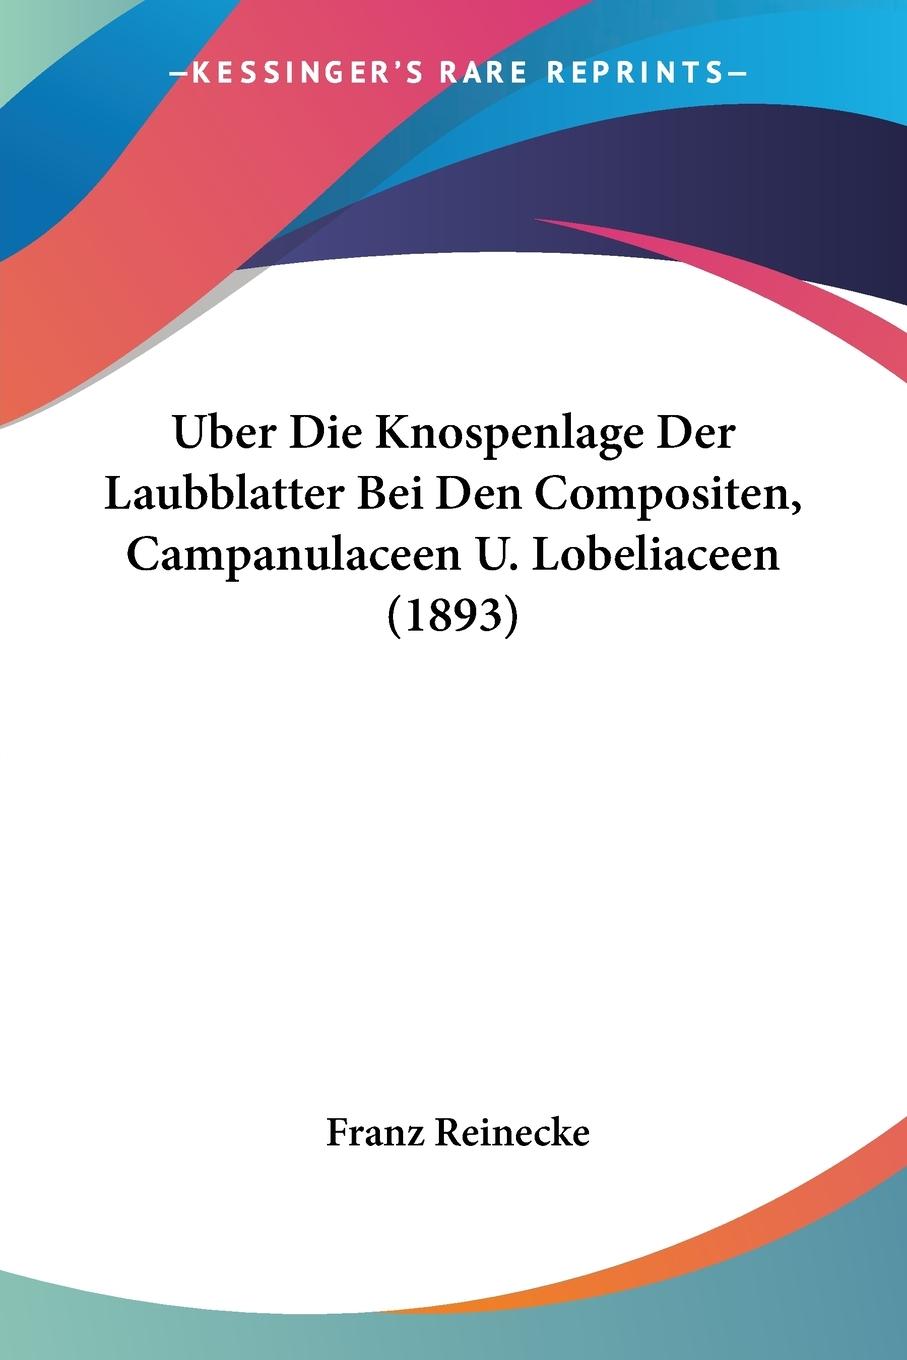 Uber Die Knospenlage Der Laubblatter Bei Den Compositen, Campanulaceen U. Lobeliaceen (1893) - Reinecke, Franz